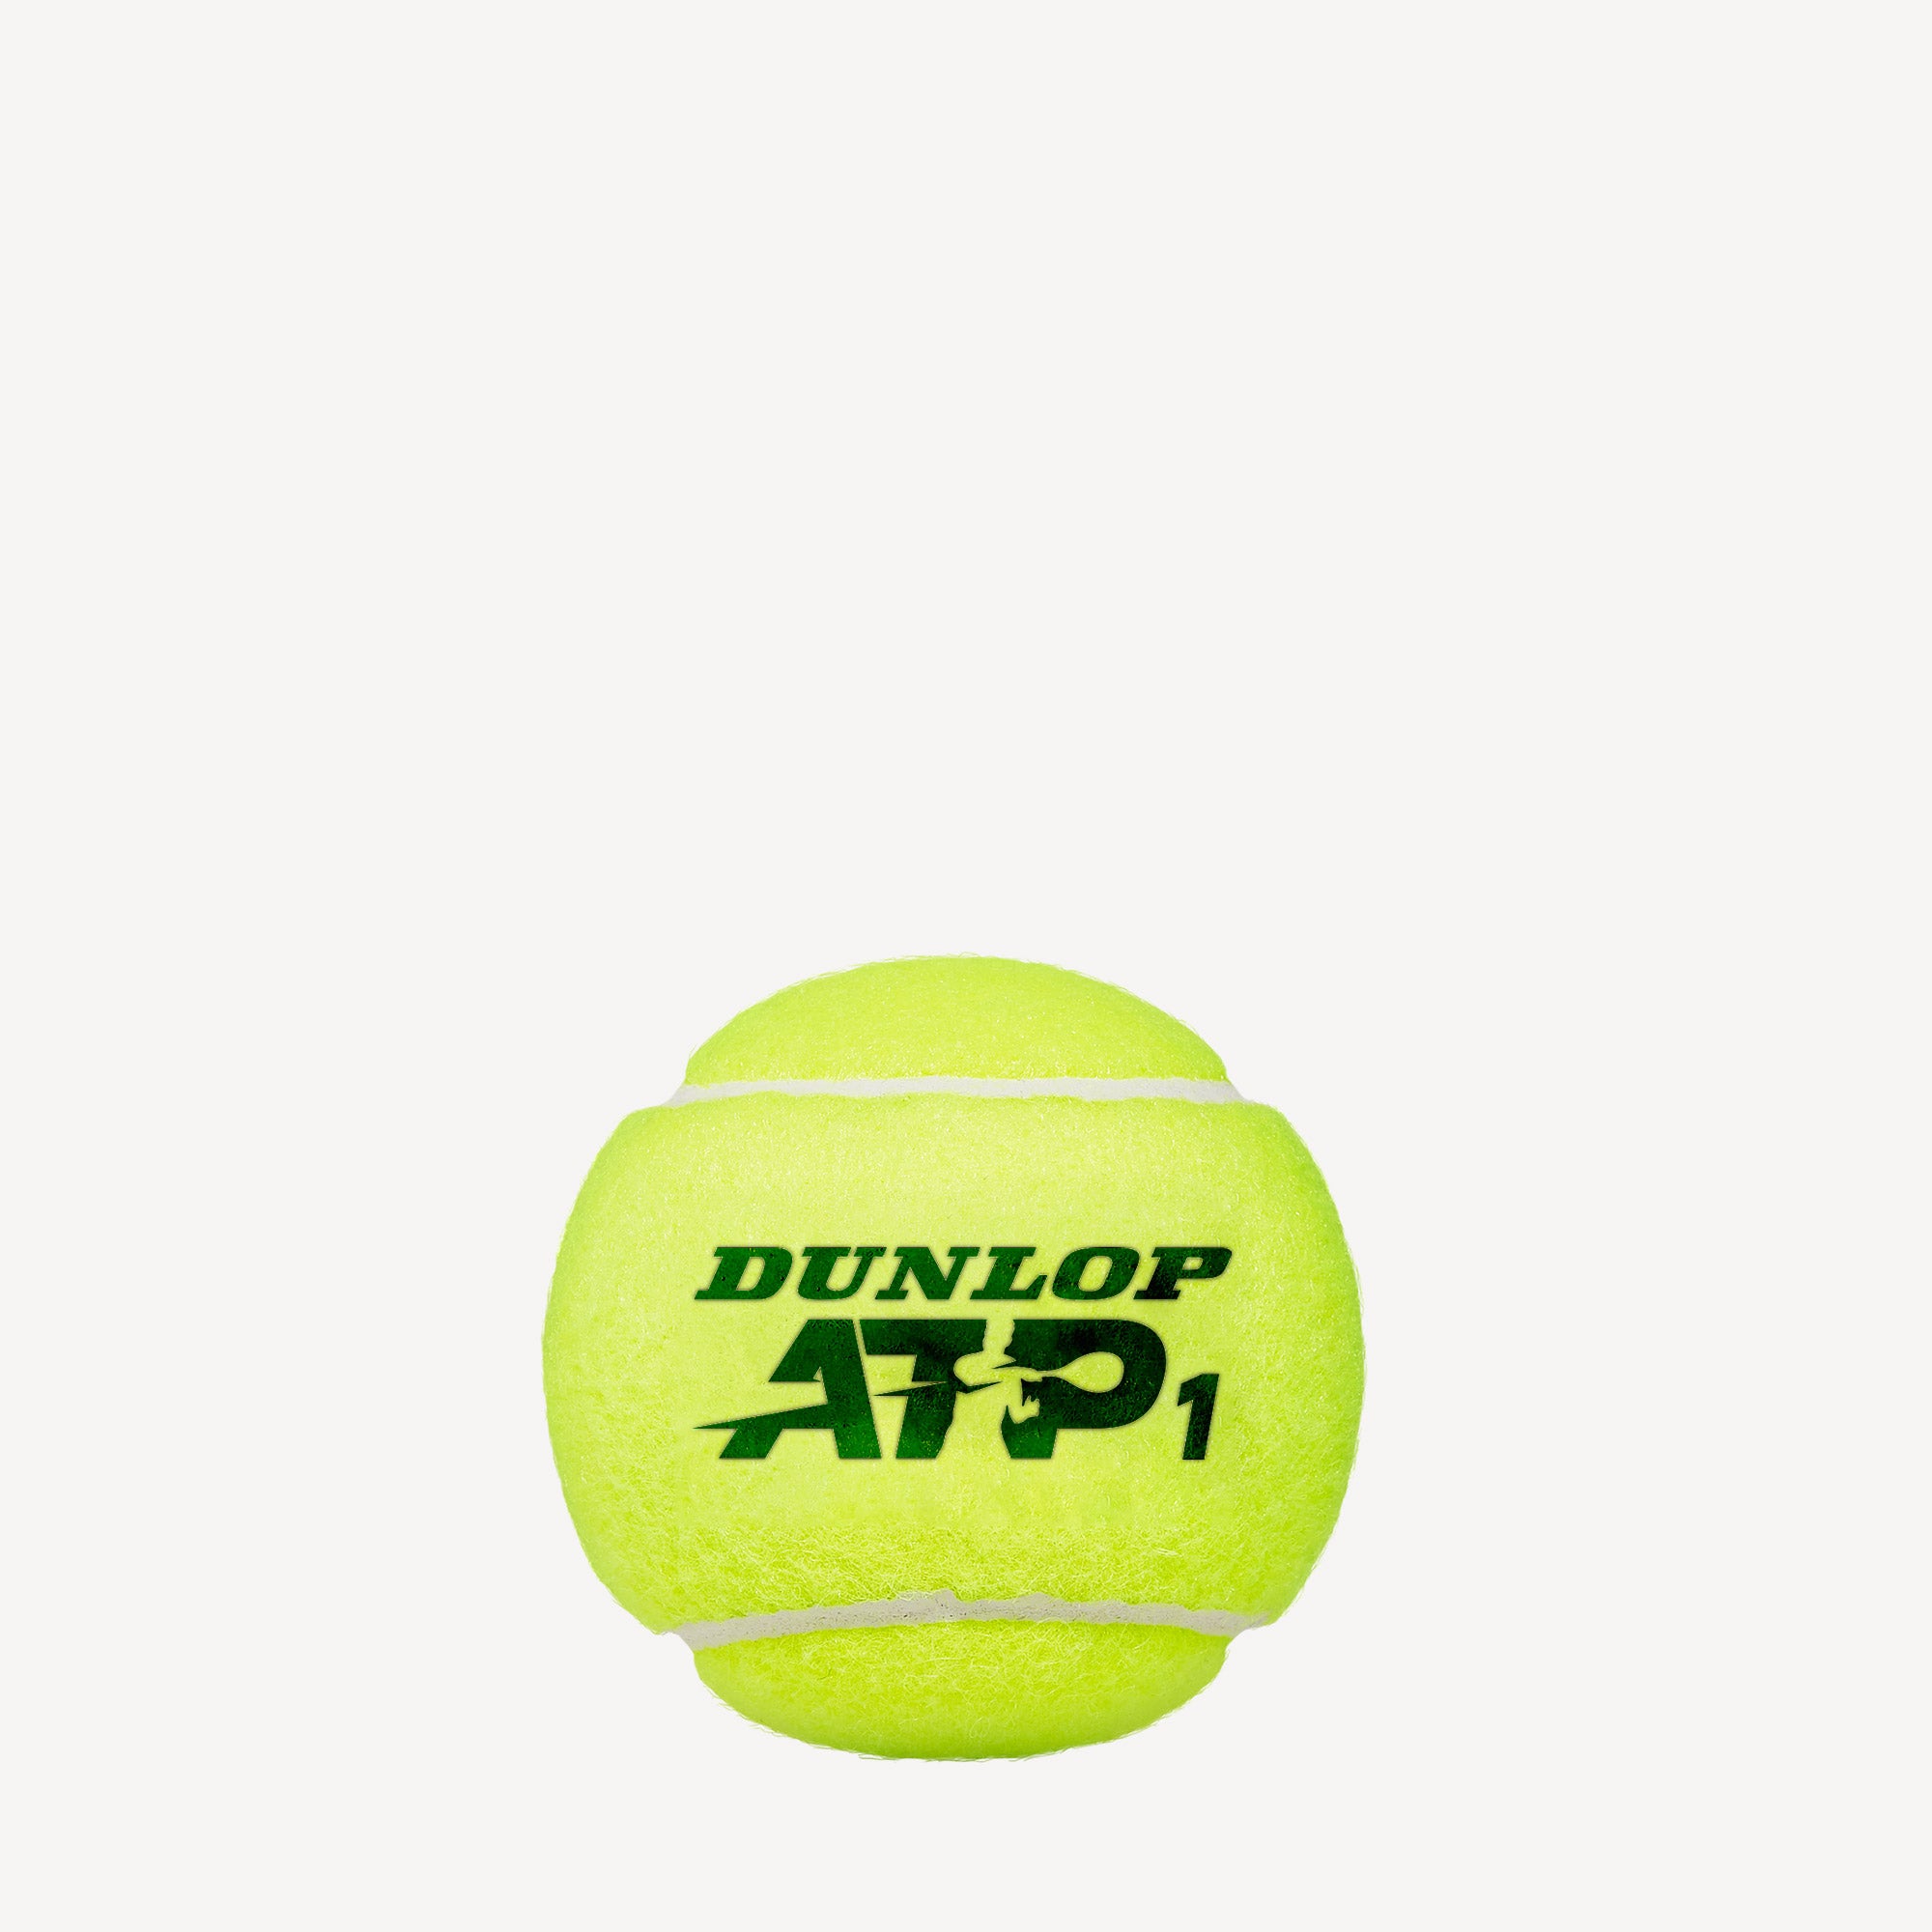 Dunlop ATP 3 Tennis Balls 2